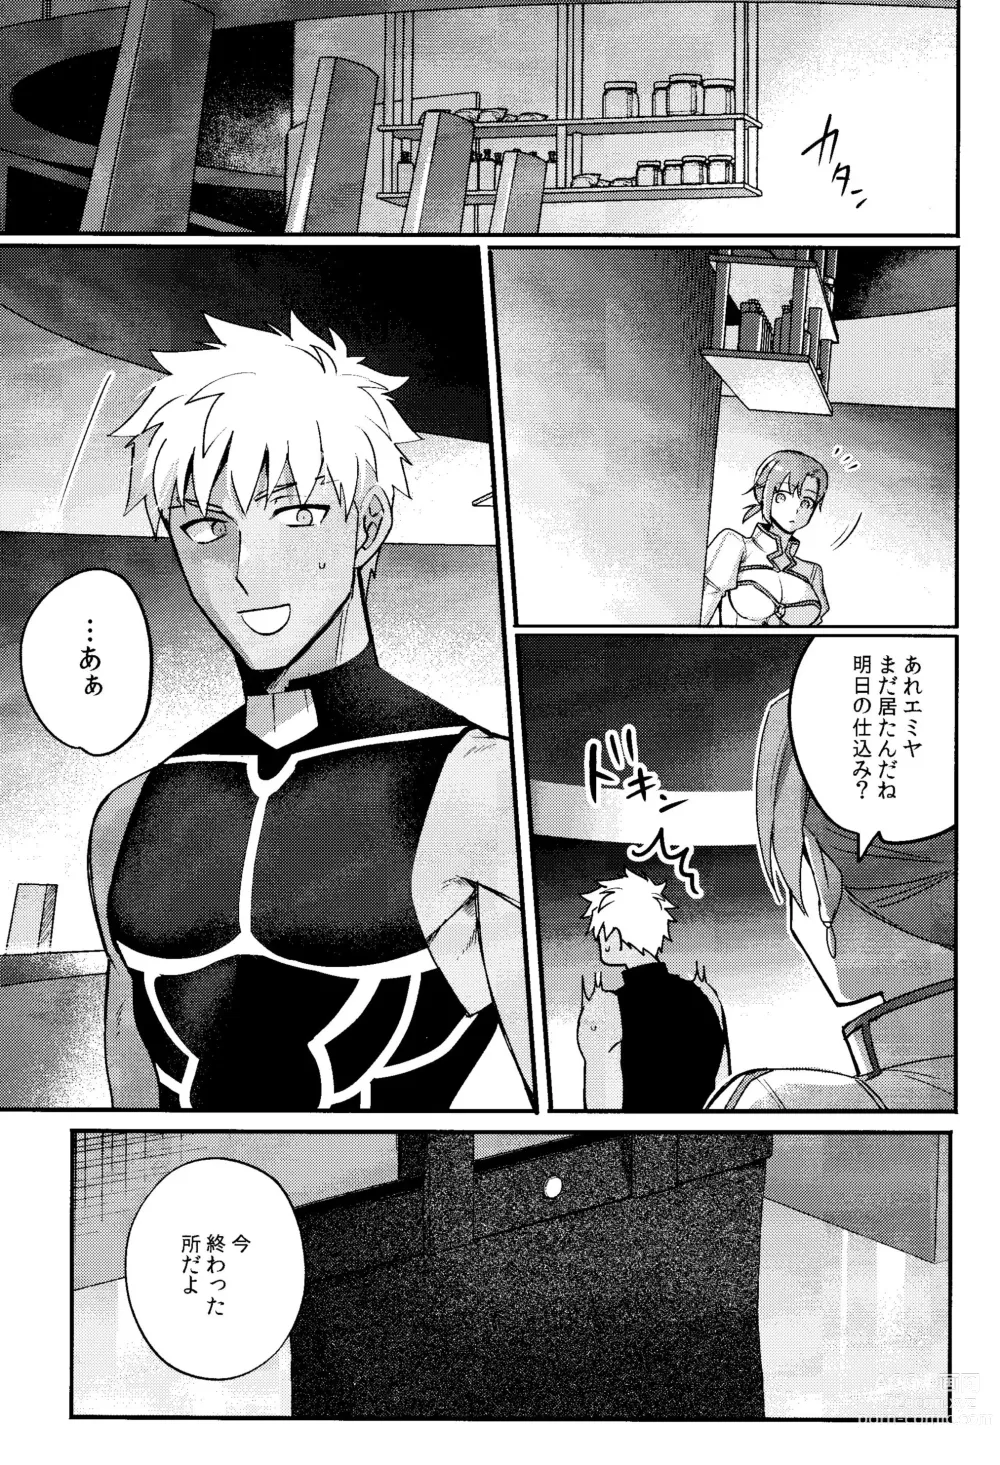 Page 2 of doujinshi Iru